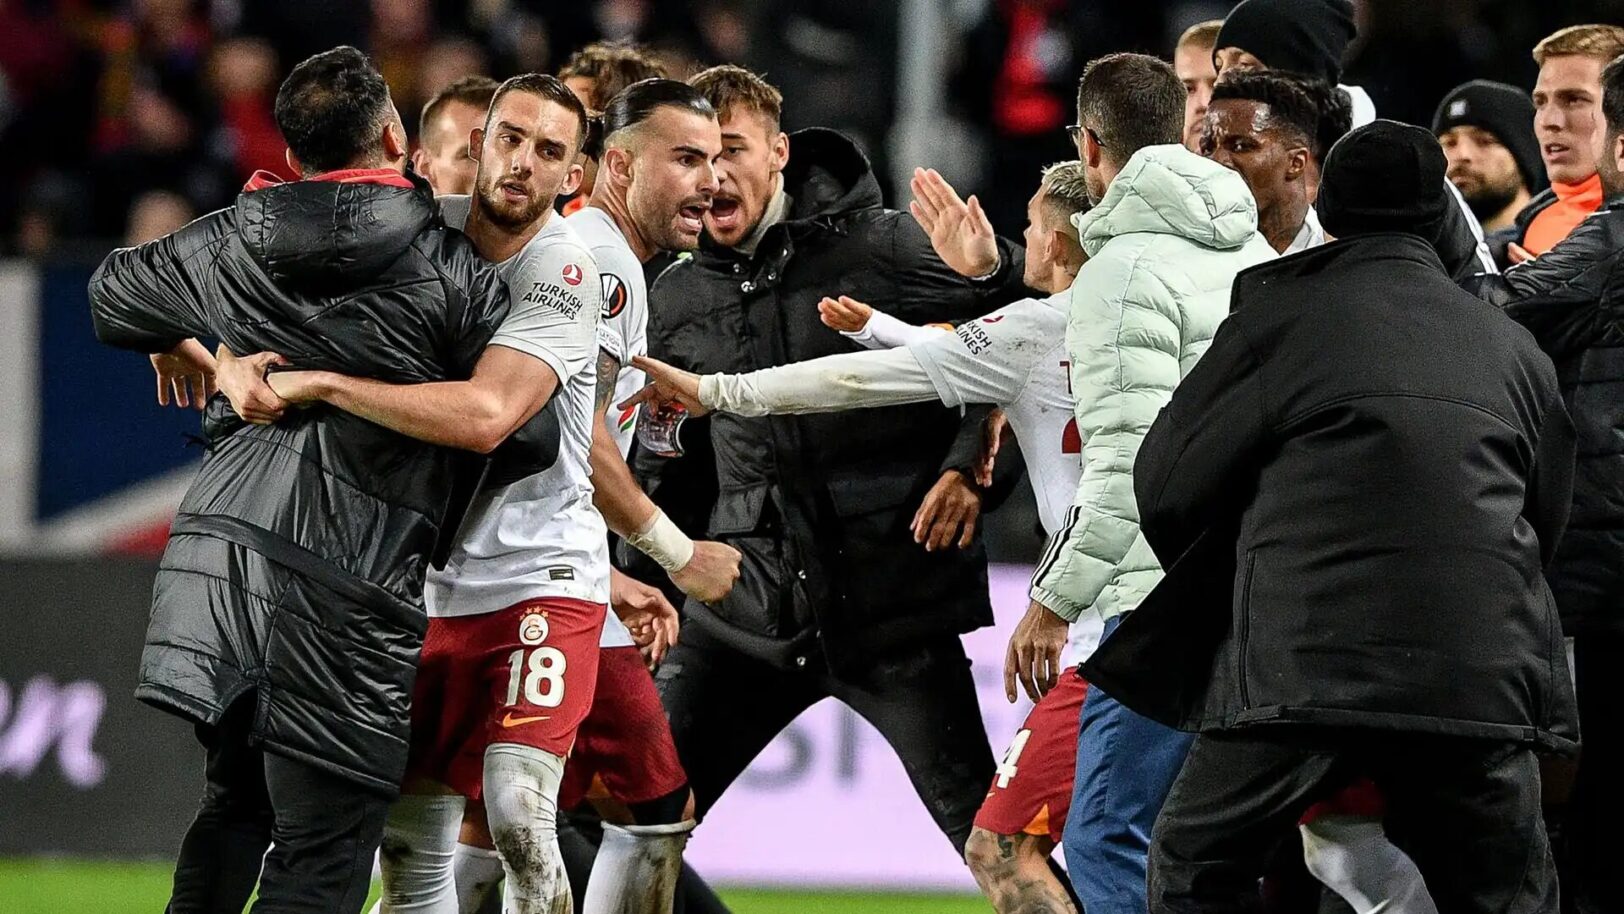 Sparta - Galatasaray : Une énorme bagarre a éclaté à la fin entre les joueurs et le staff….